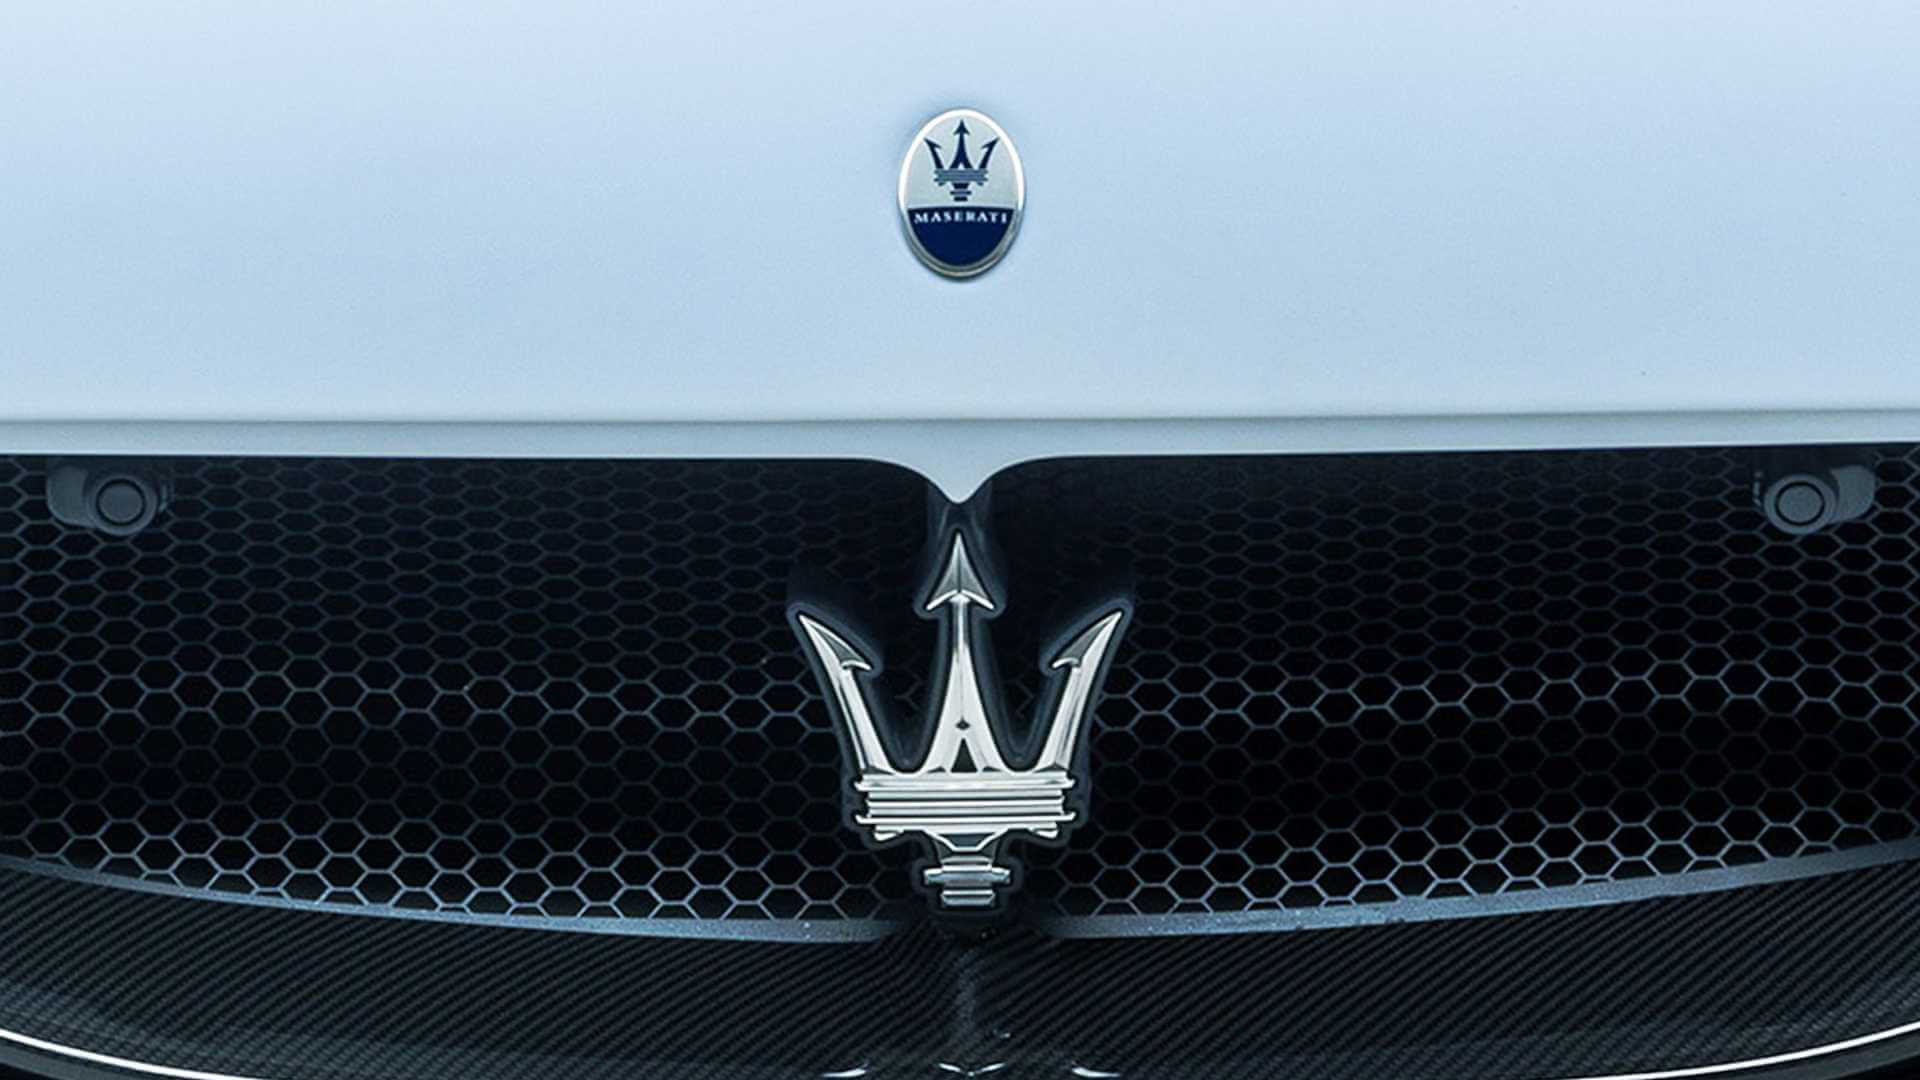 Đây là thương hiệu xe thể thao hạng sang đến từ Ý, Maserati chính thức vào Việt Nam vào cuối năm 2015